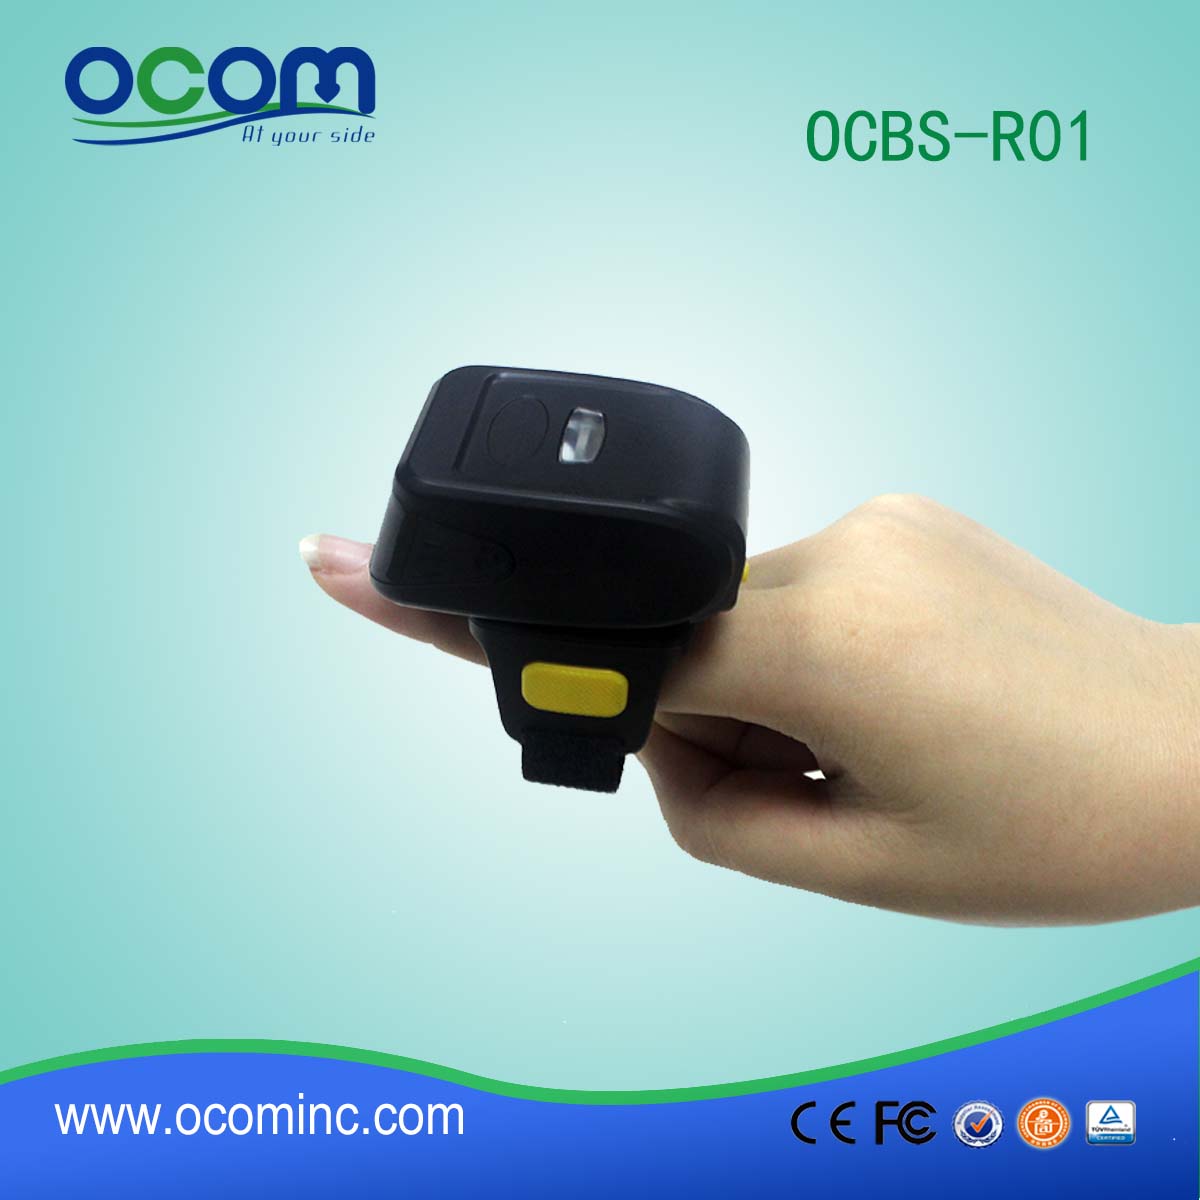 OCBS-R01 najniższa cena Mały i poręczny czytnik kodów kreskowych Bluetooth